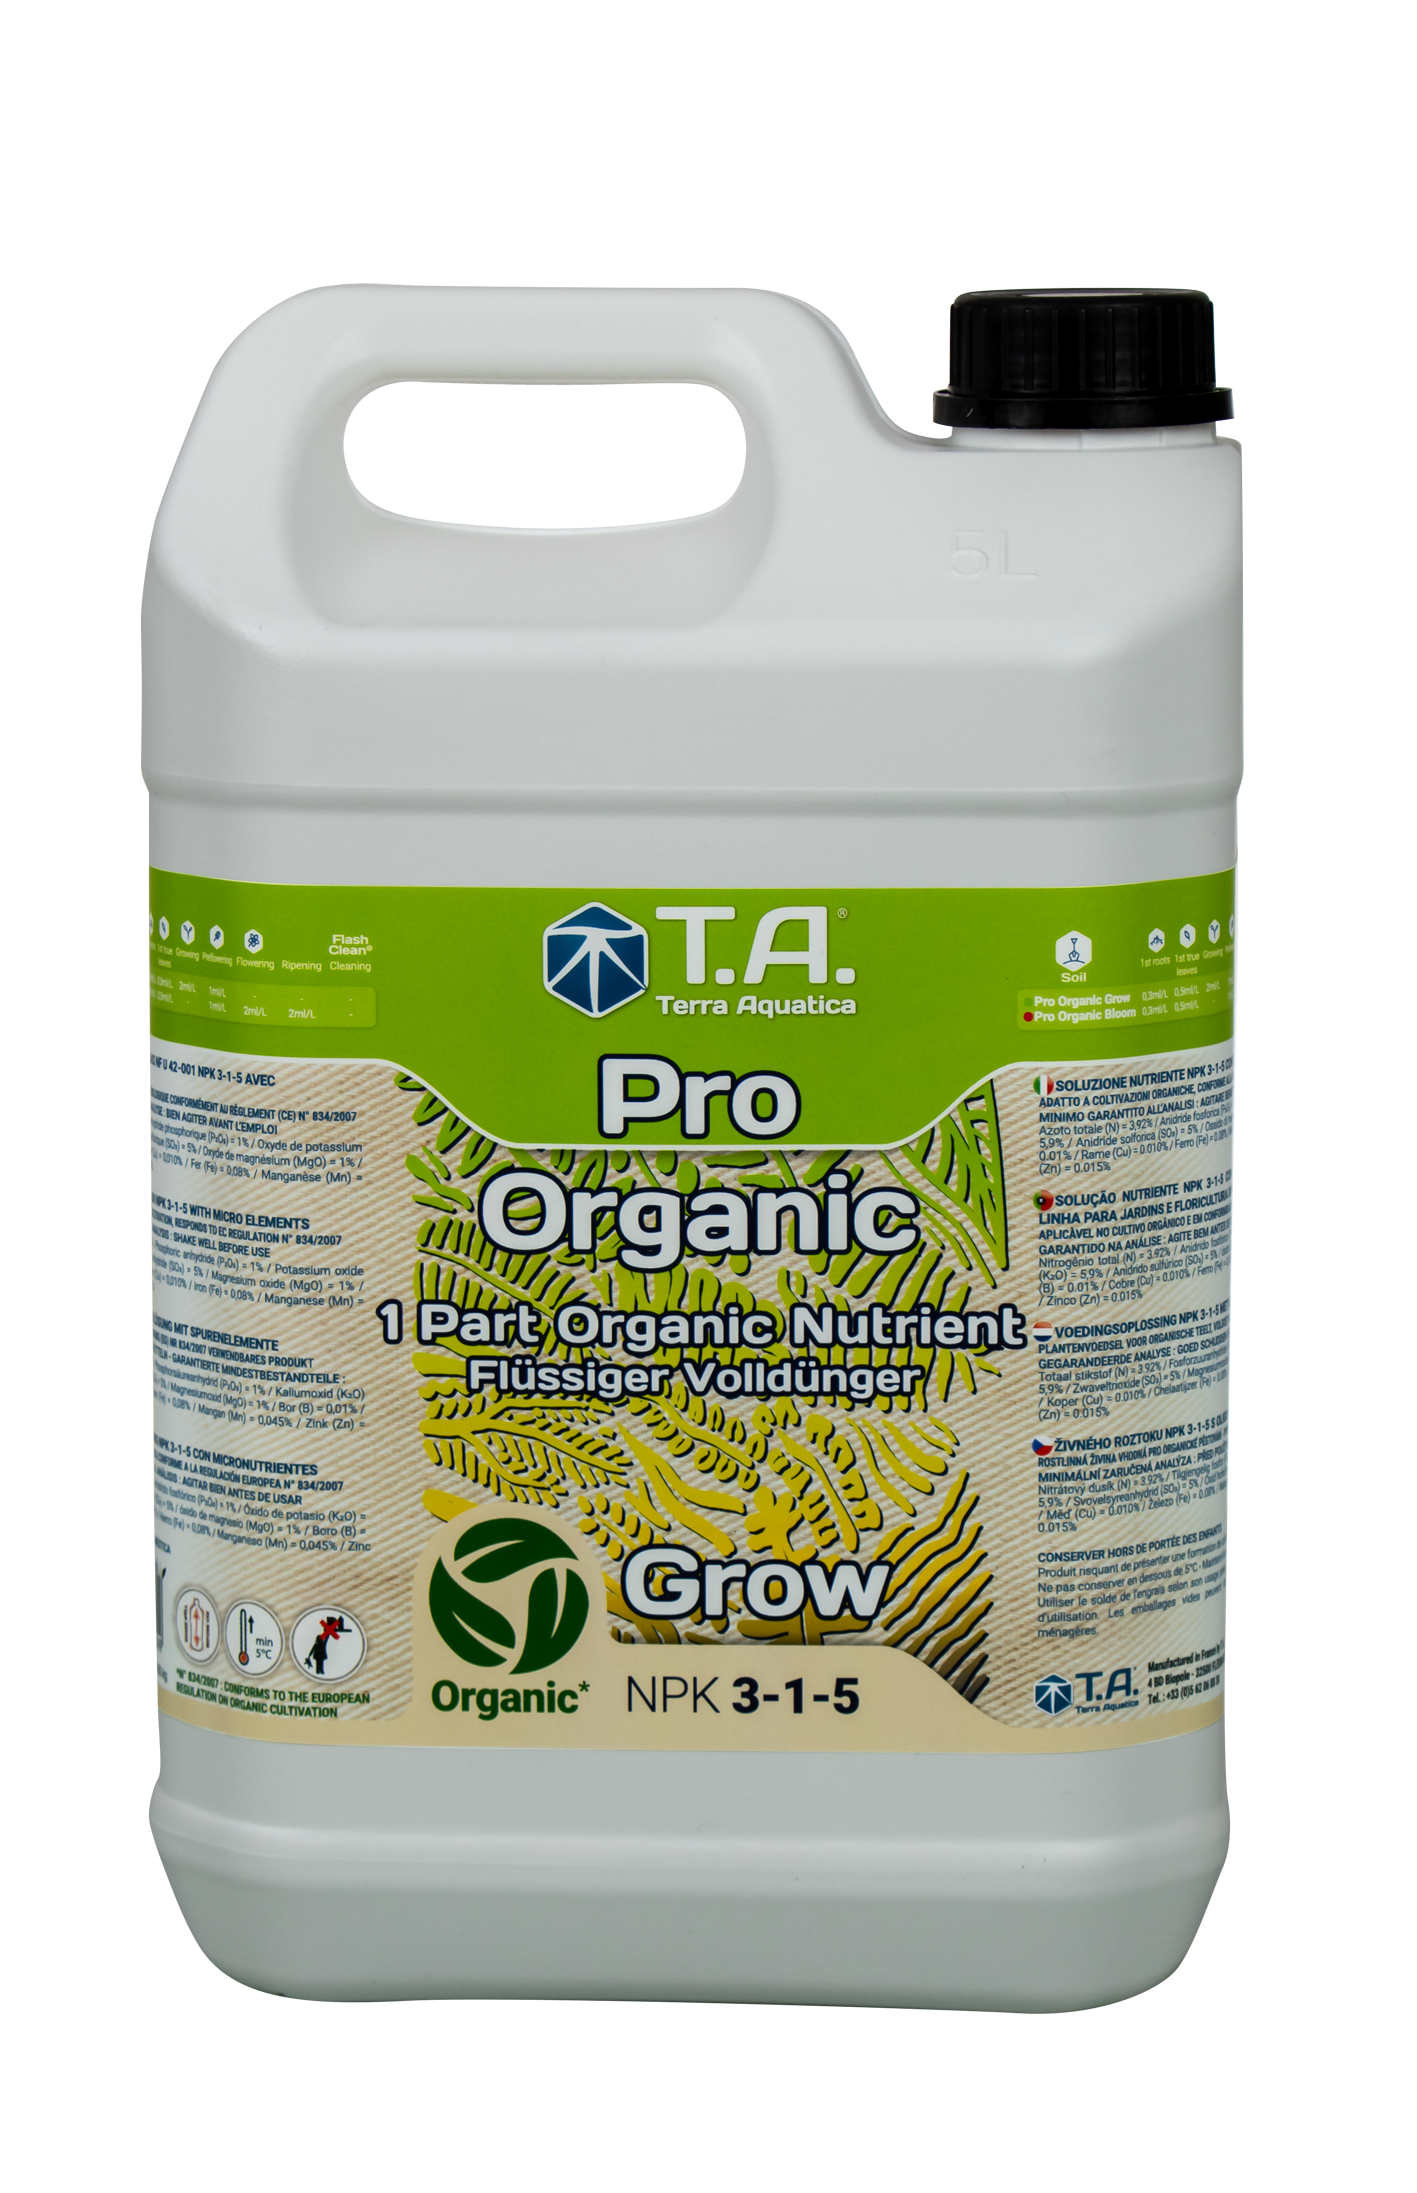 Pro Organic Grow - პრო ორგანიკ გროუ